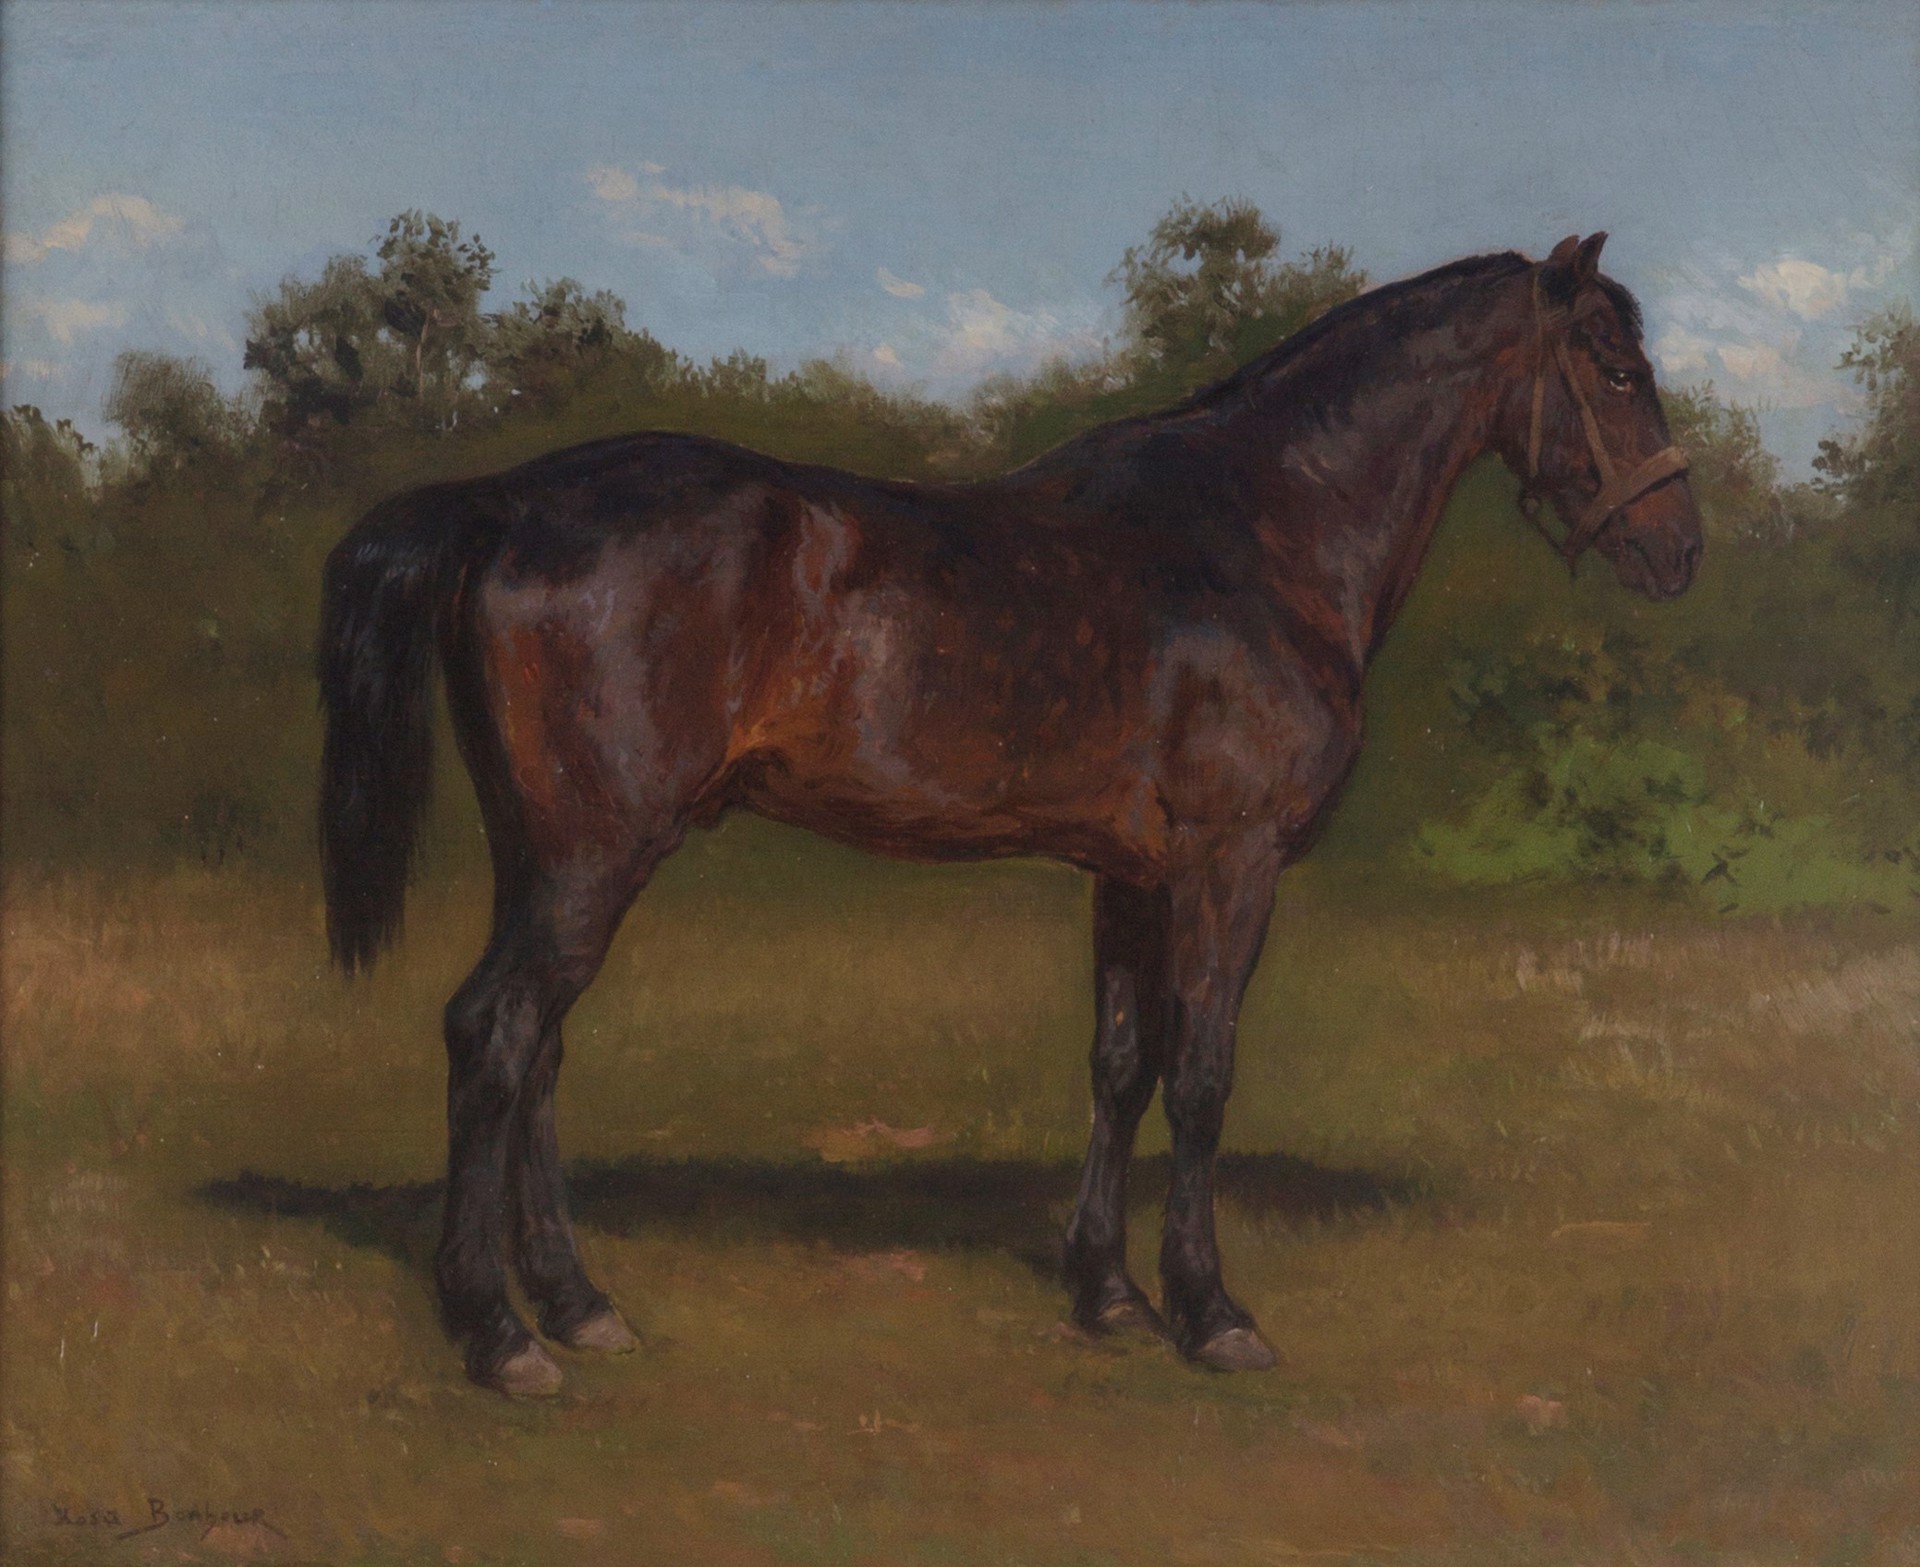 Portrait of a Bay Horse by Rosa Bonheur